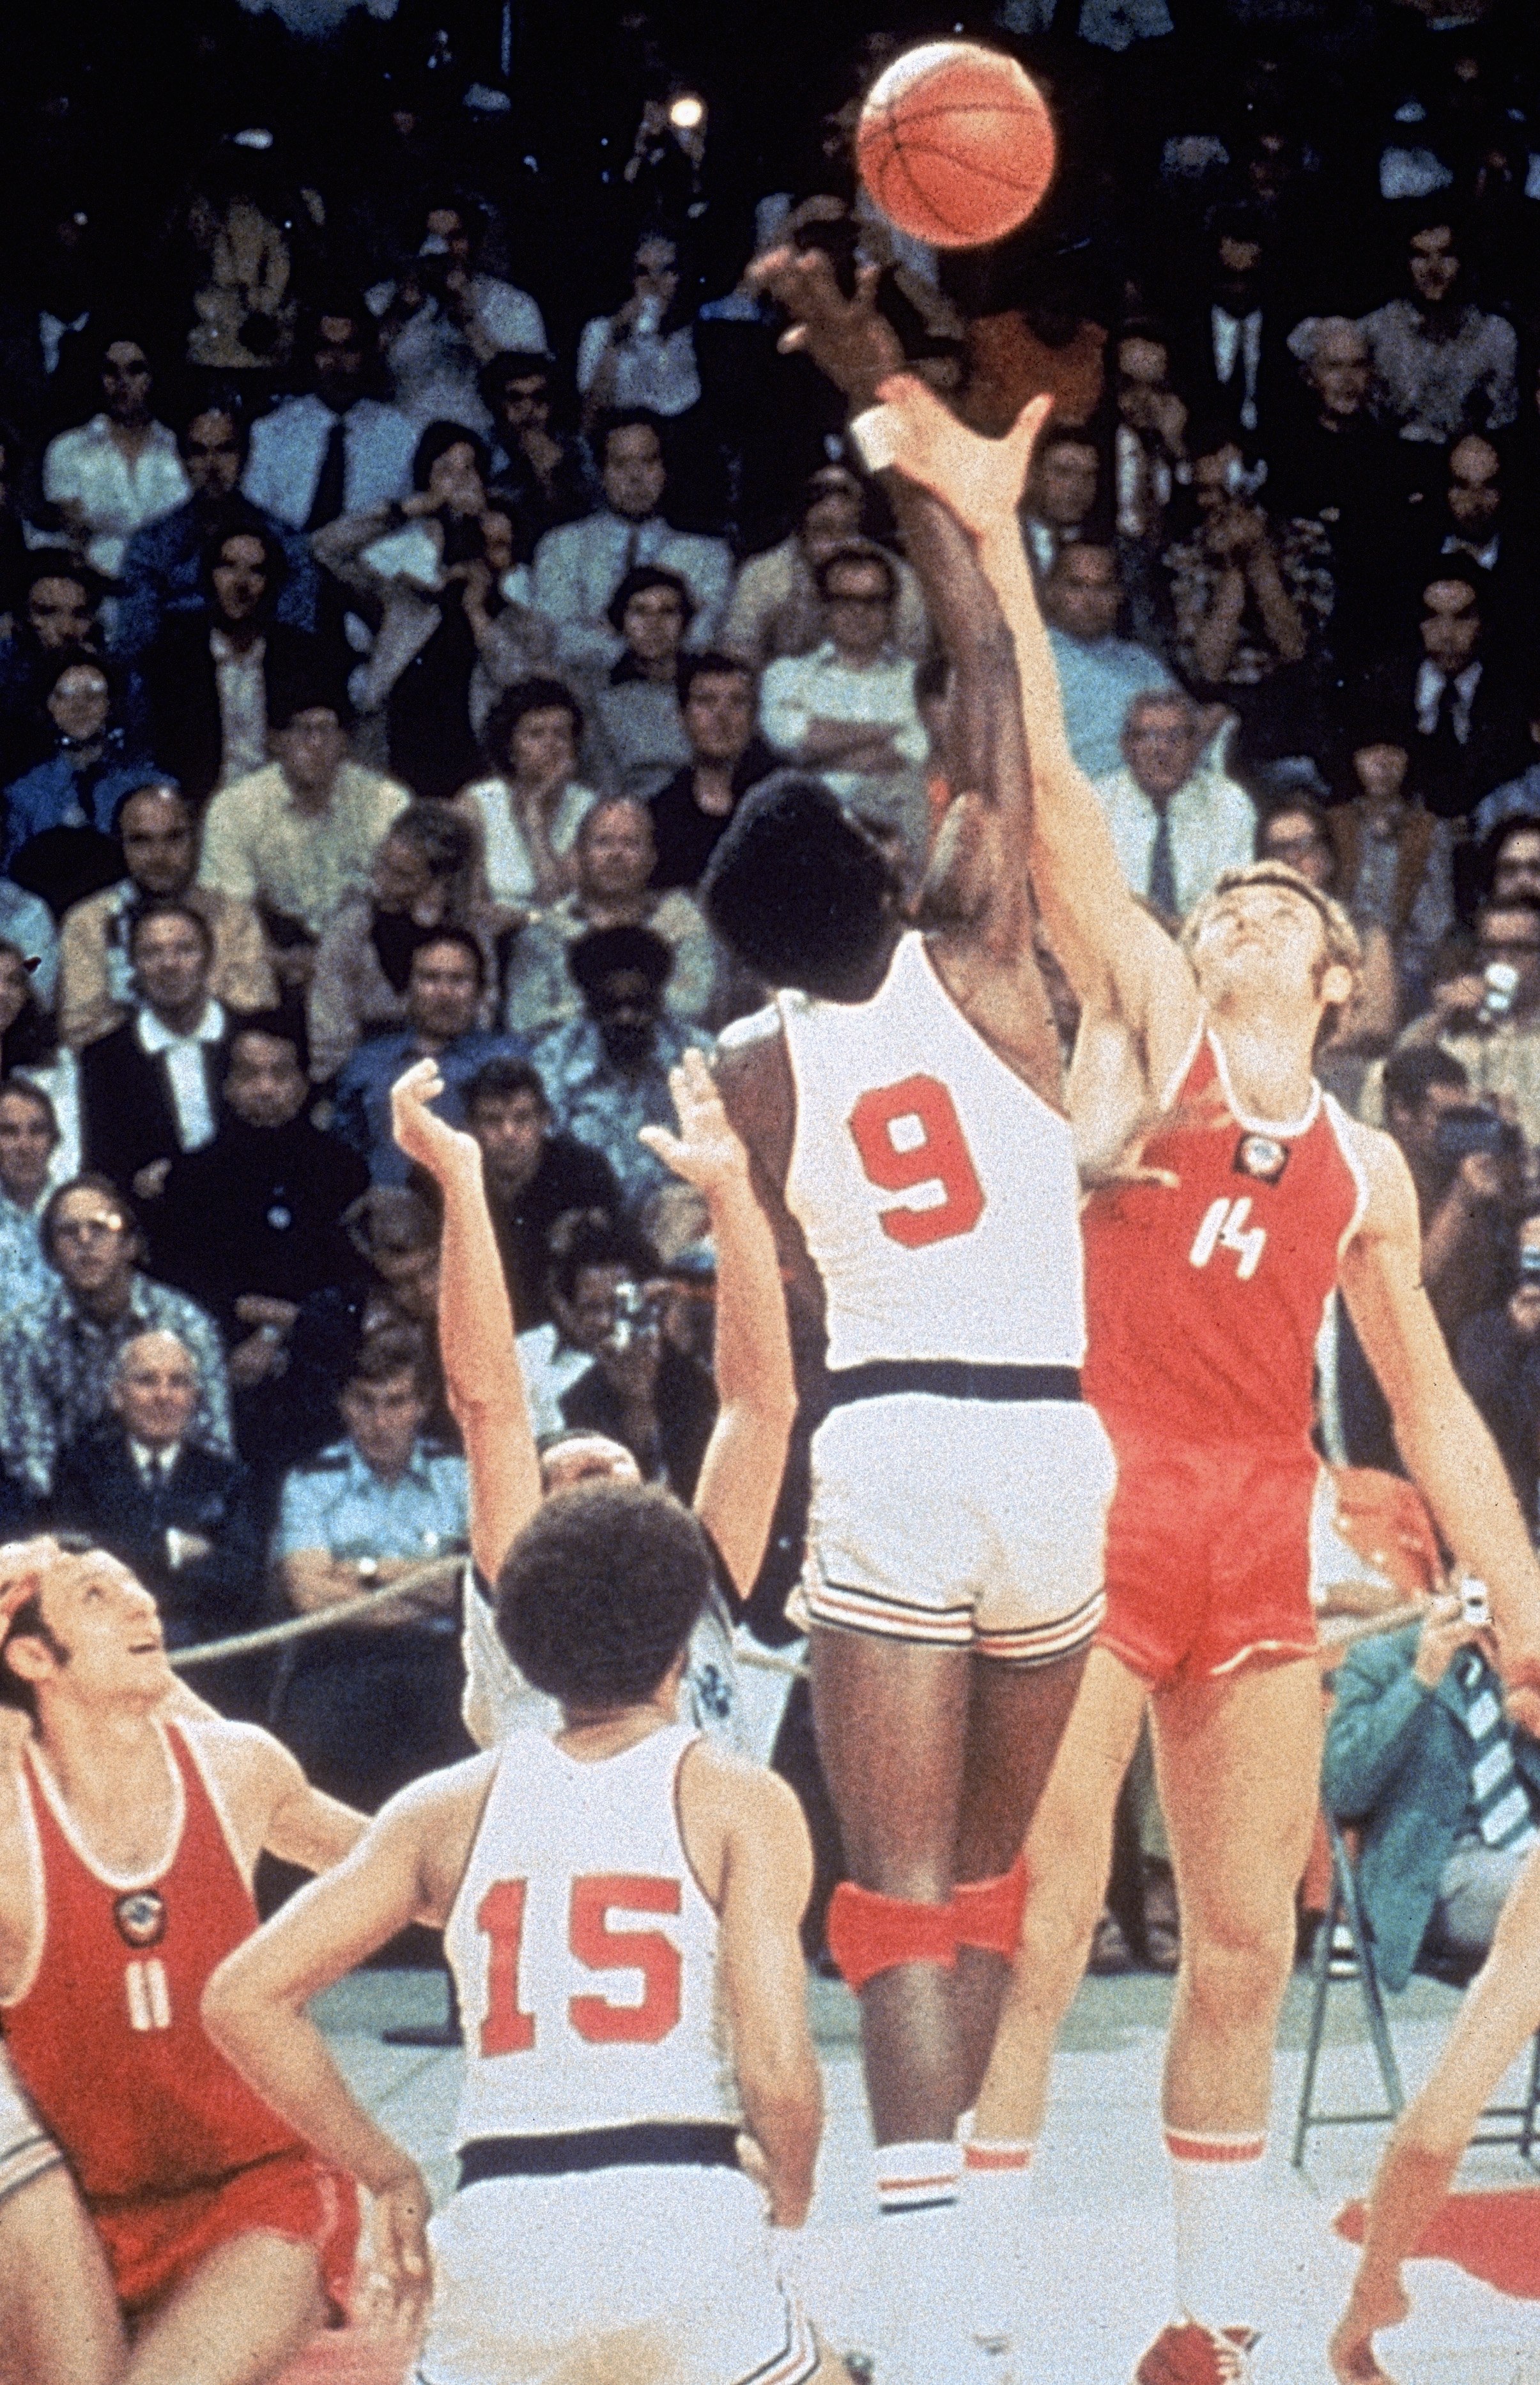 Игры 1972 баскетбол. Мюнхен 1972 баскетбол. СССР-США баскетбол 1972. Баскетбол Мюнхен 1972 СССР США. 1972 Баскетбольный матч СССР США.